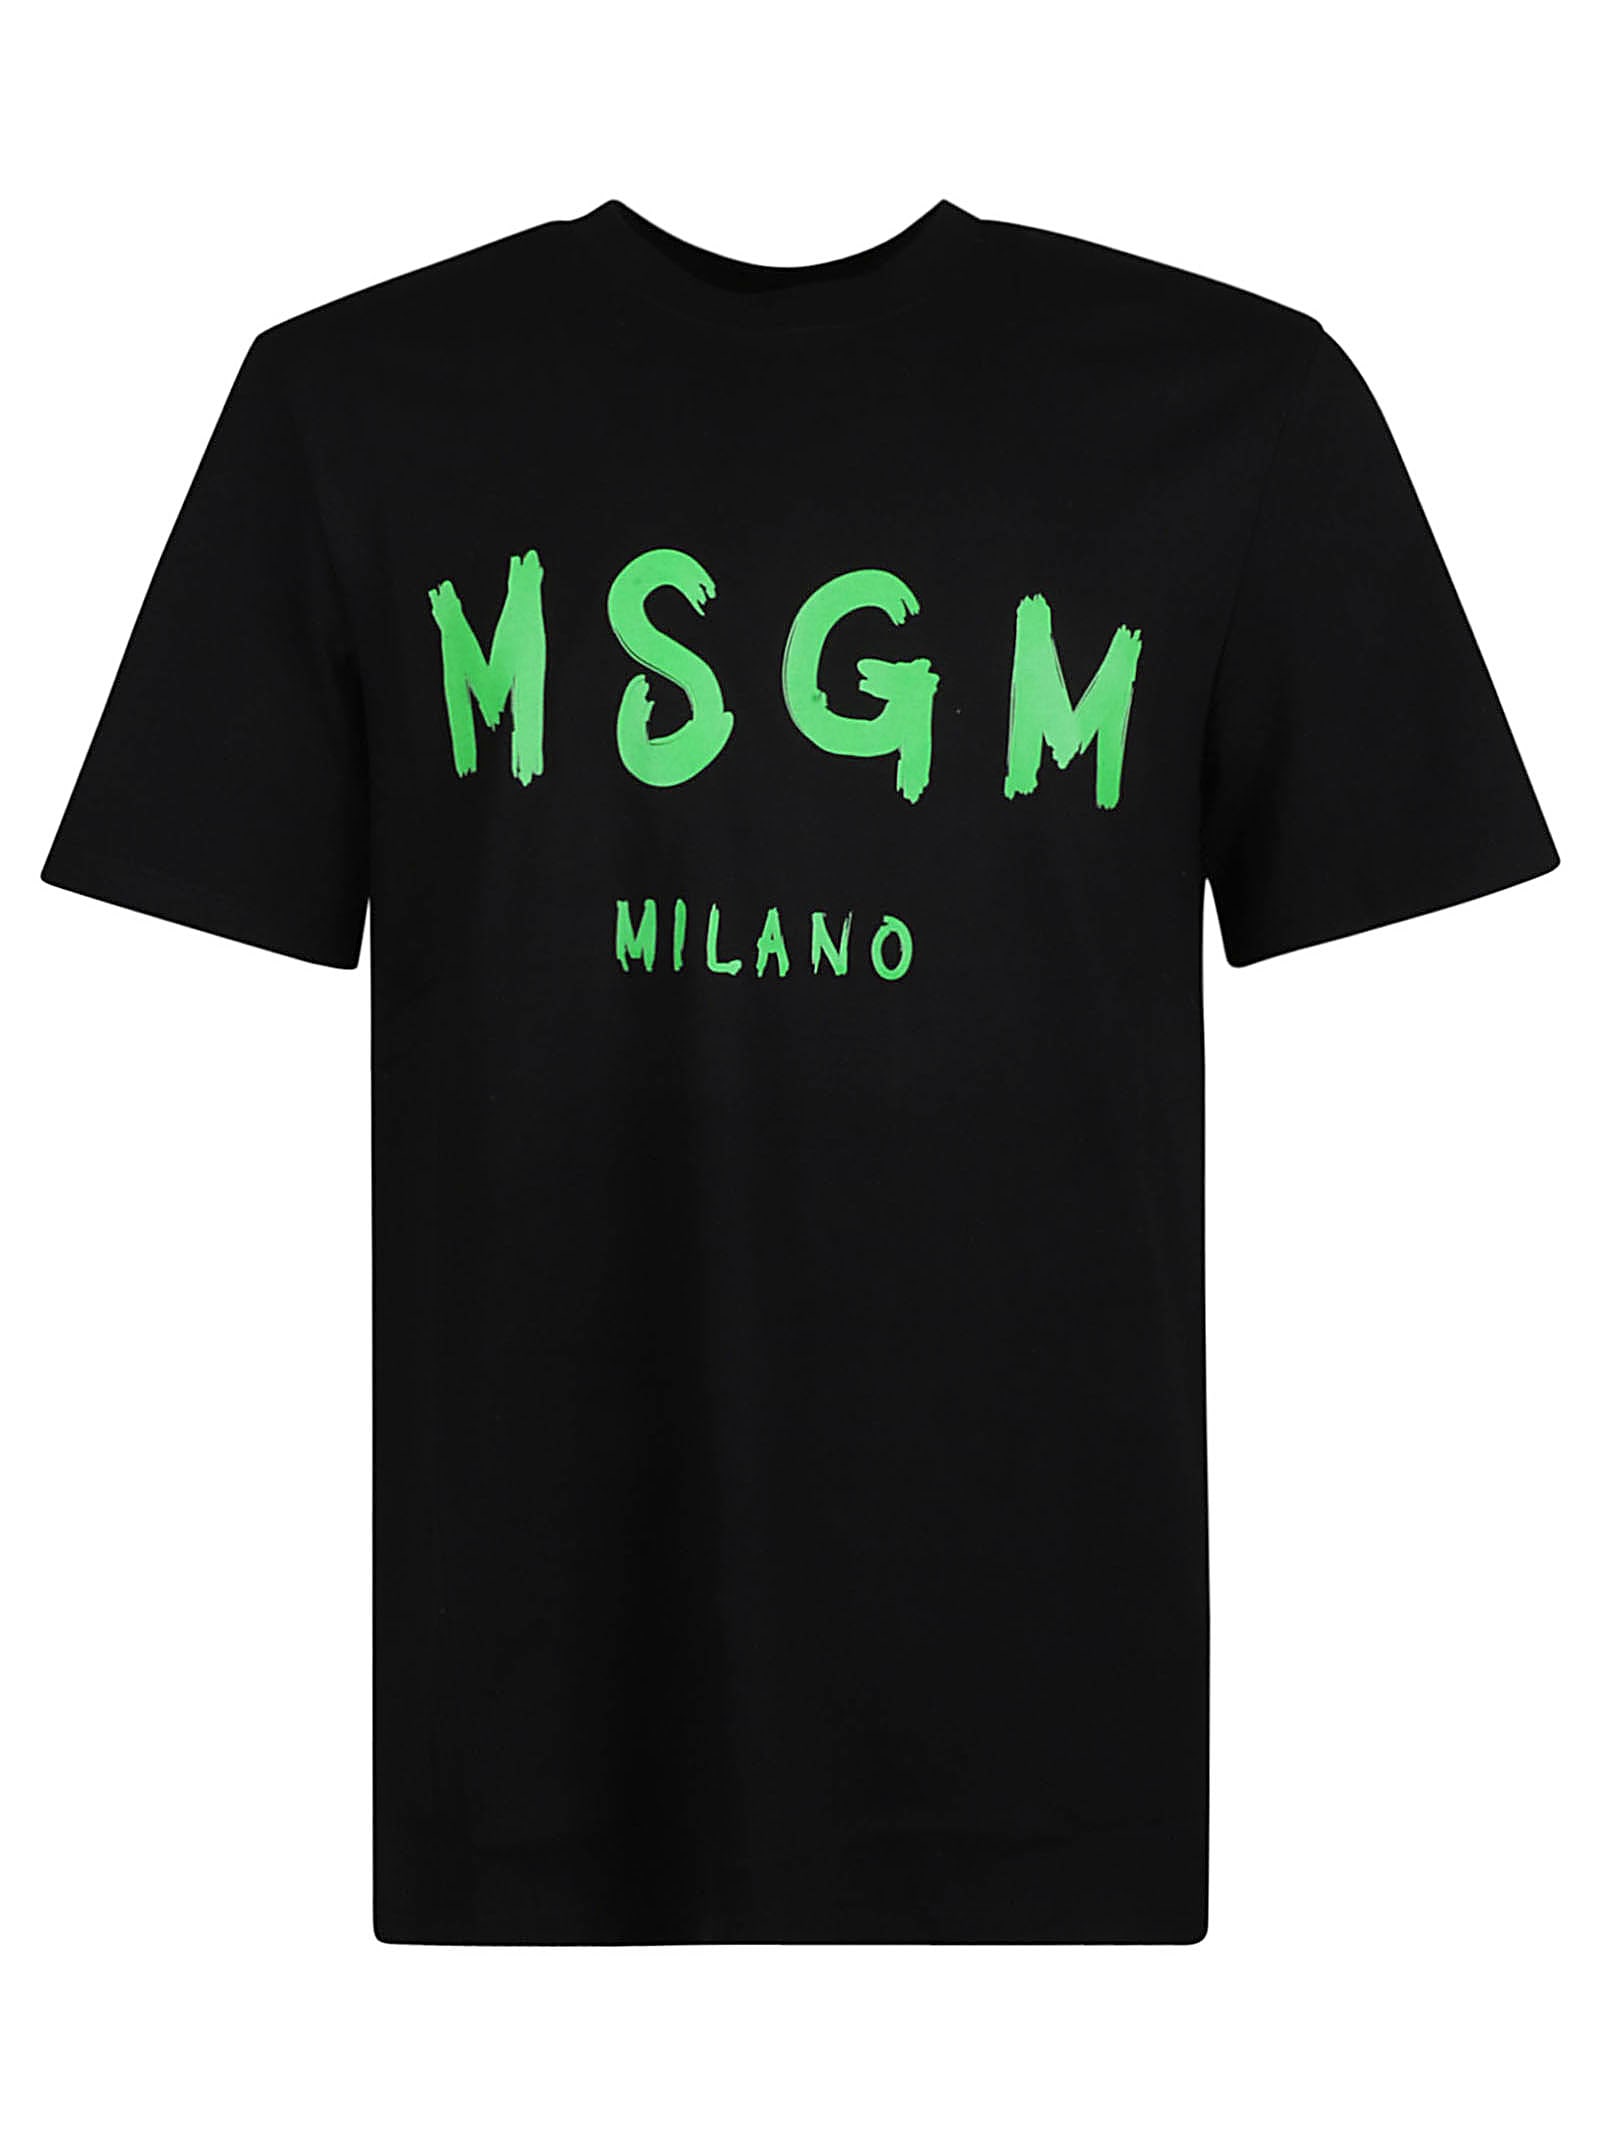 MSGM Milano T-shirt